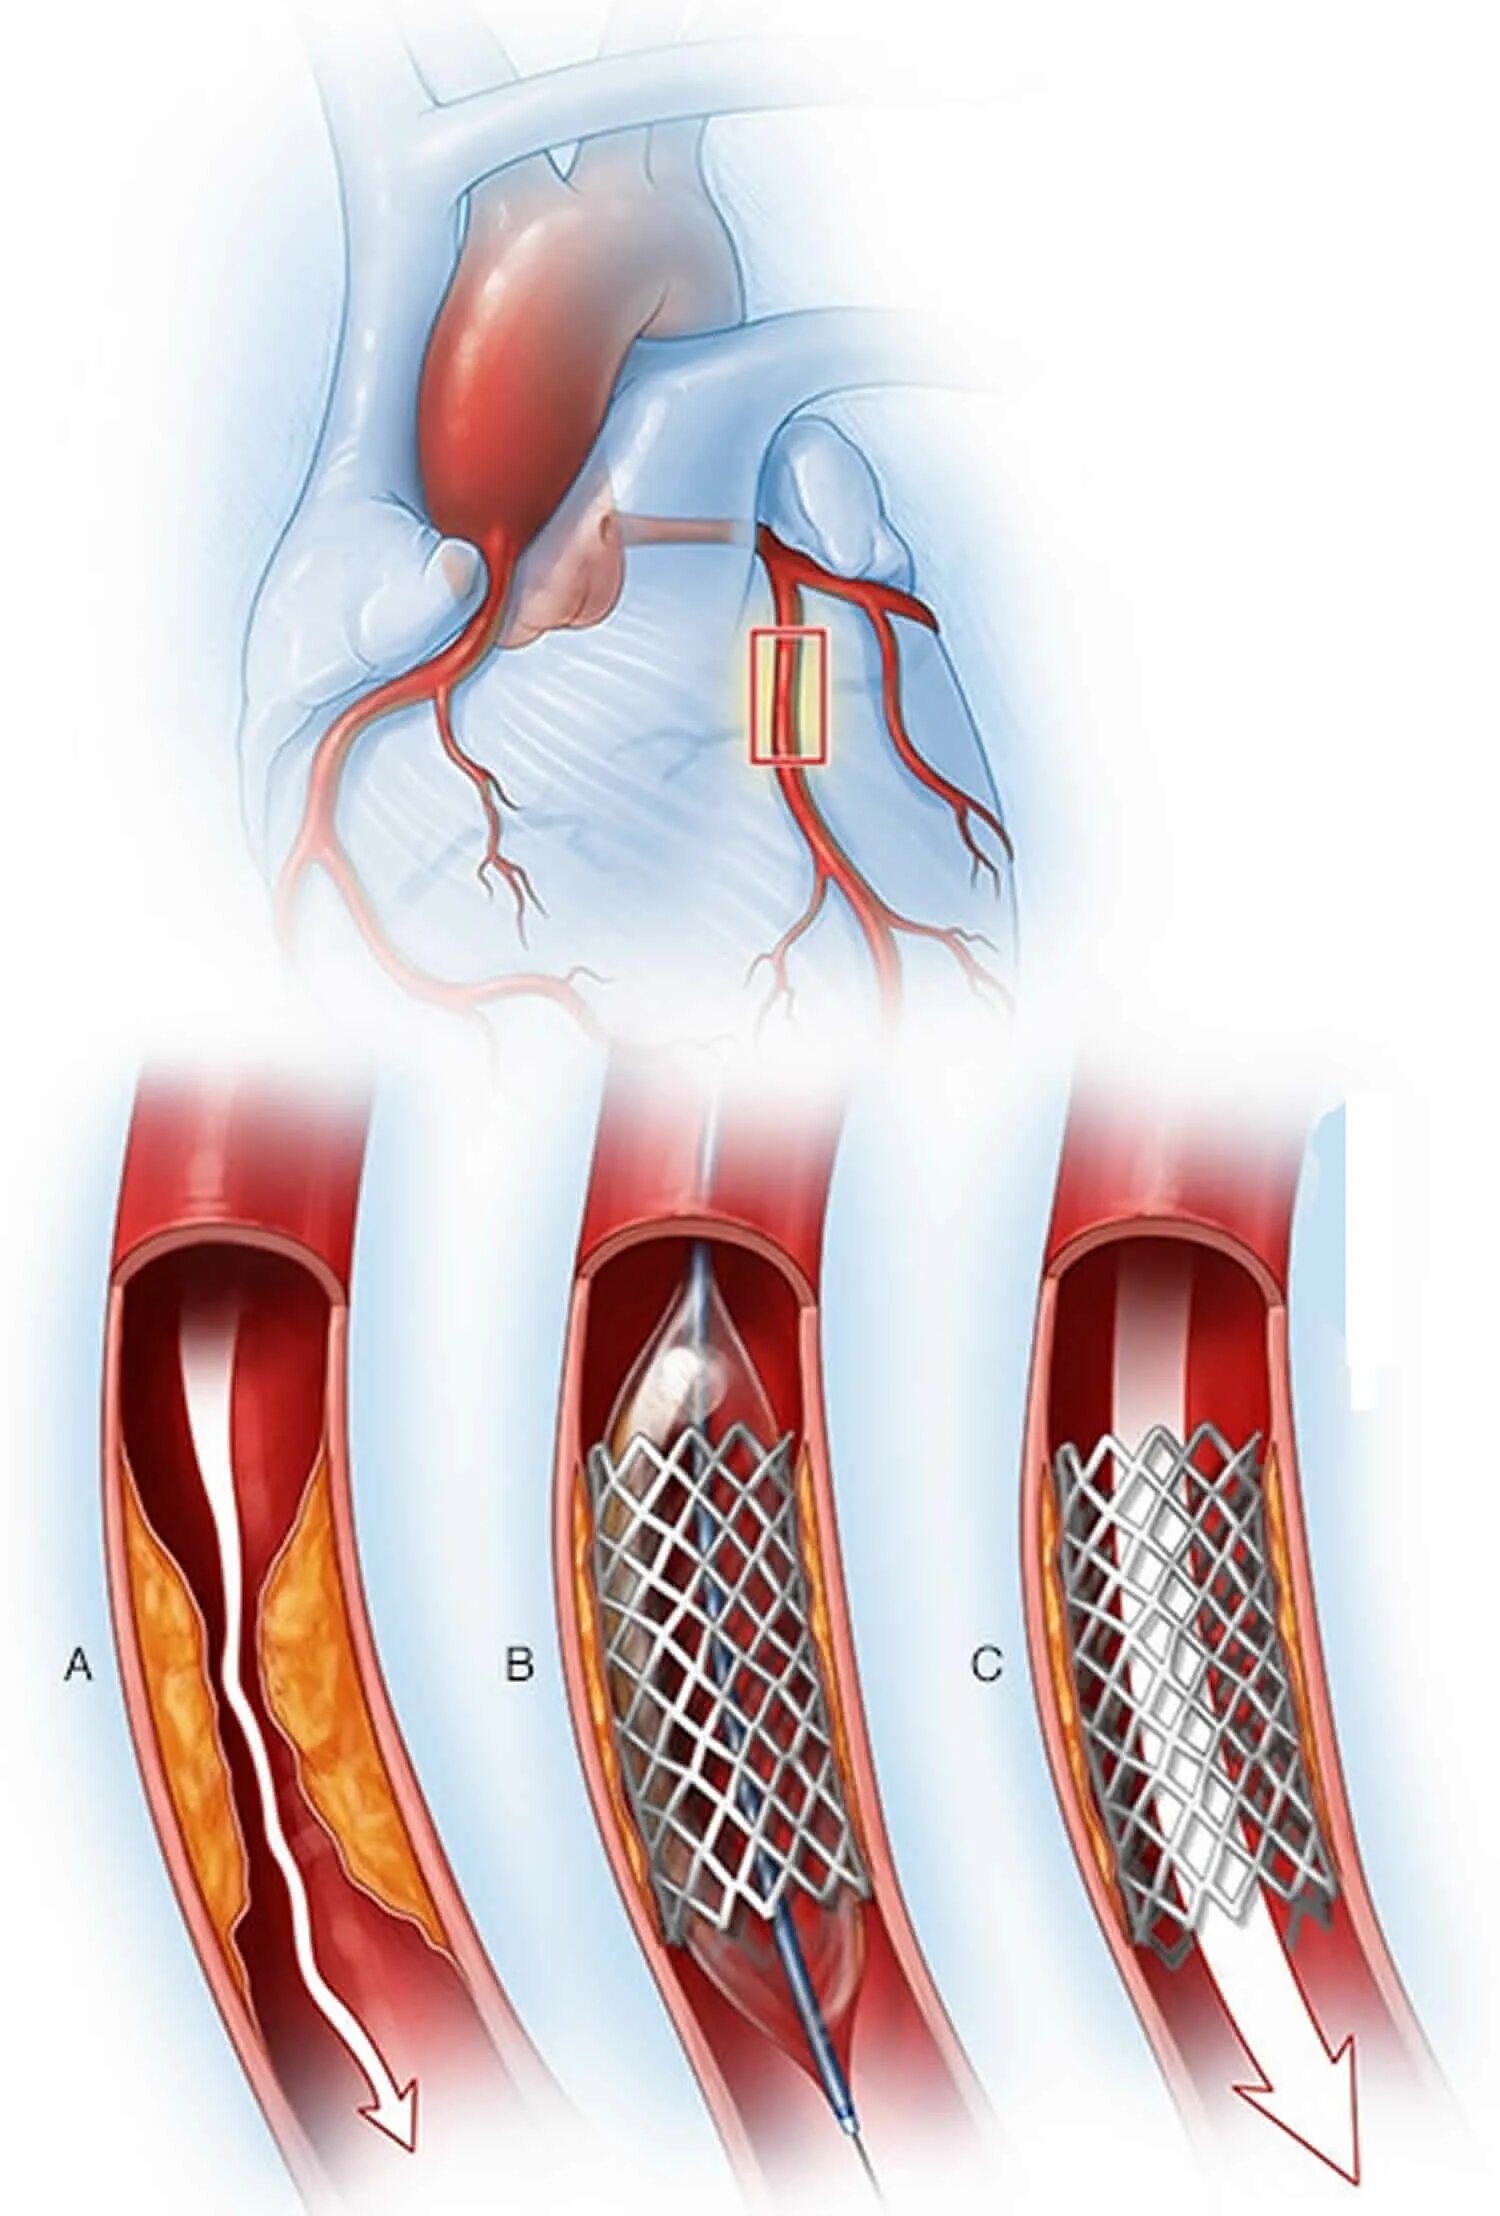 Стентирование коронарных артерий. Коронарное стентирование сосудов сердца. Шунтирование сосудов сердца стент. Расширение сердечного сосуда